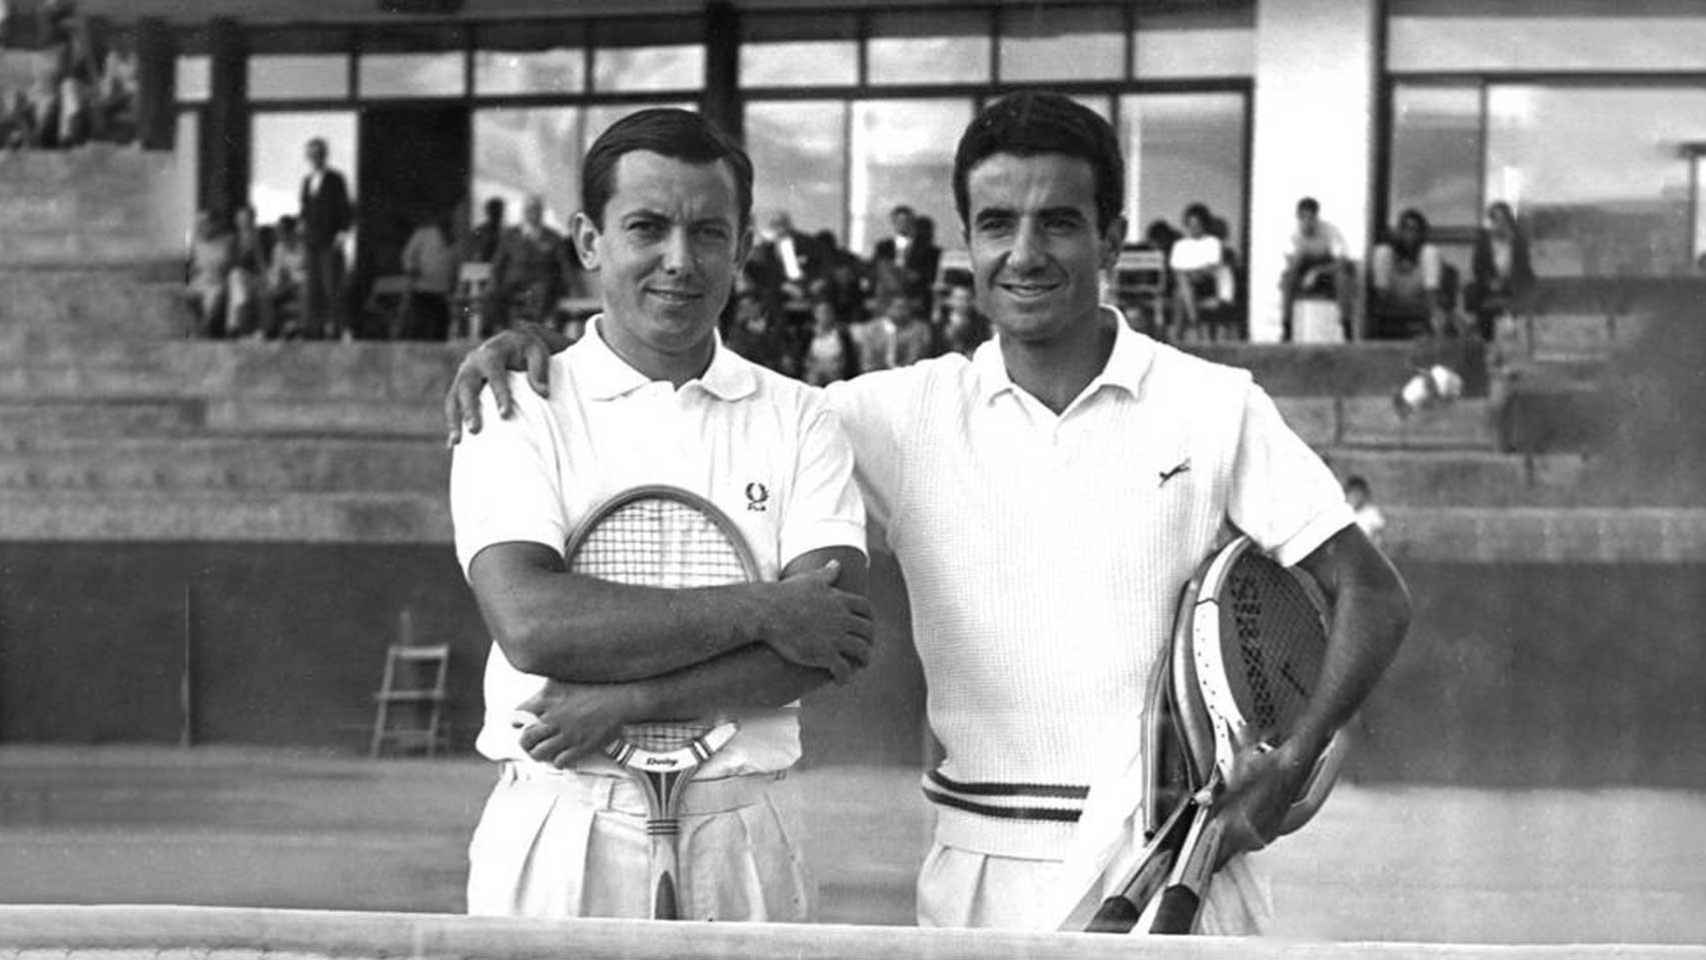 José Luis Arilla y José María Gisbert, vencedores de dobles en los Campeonato de España de Tenis celebrados en 1966 en Huelva